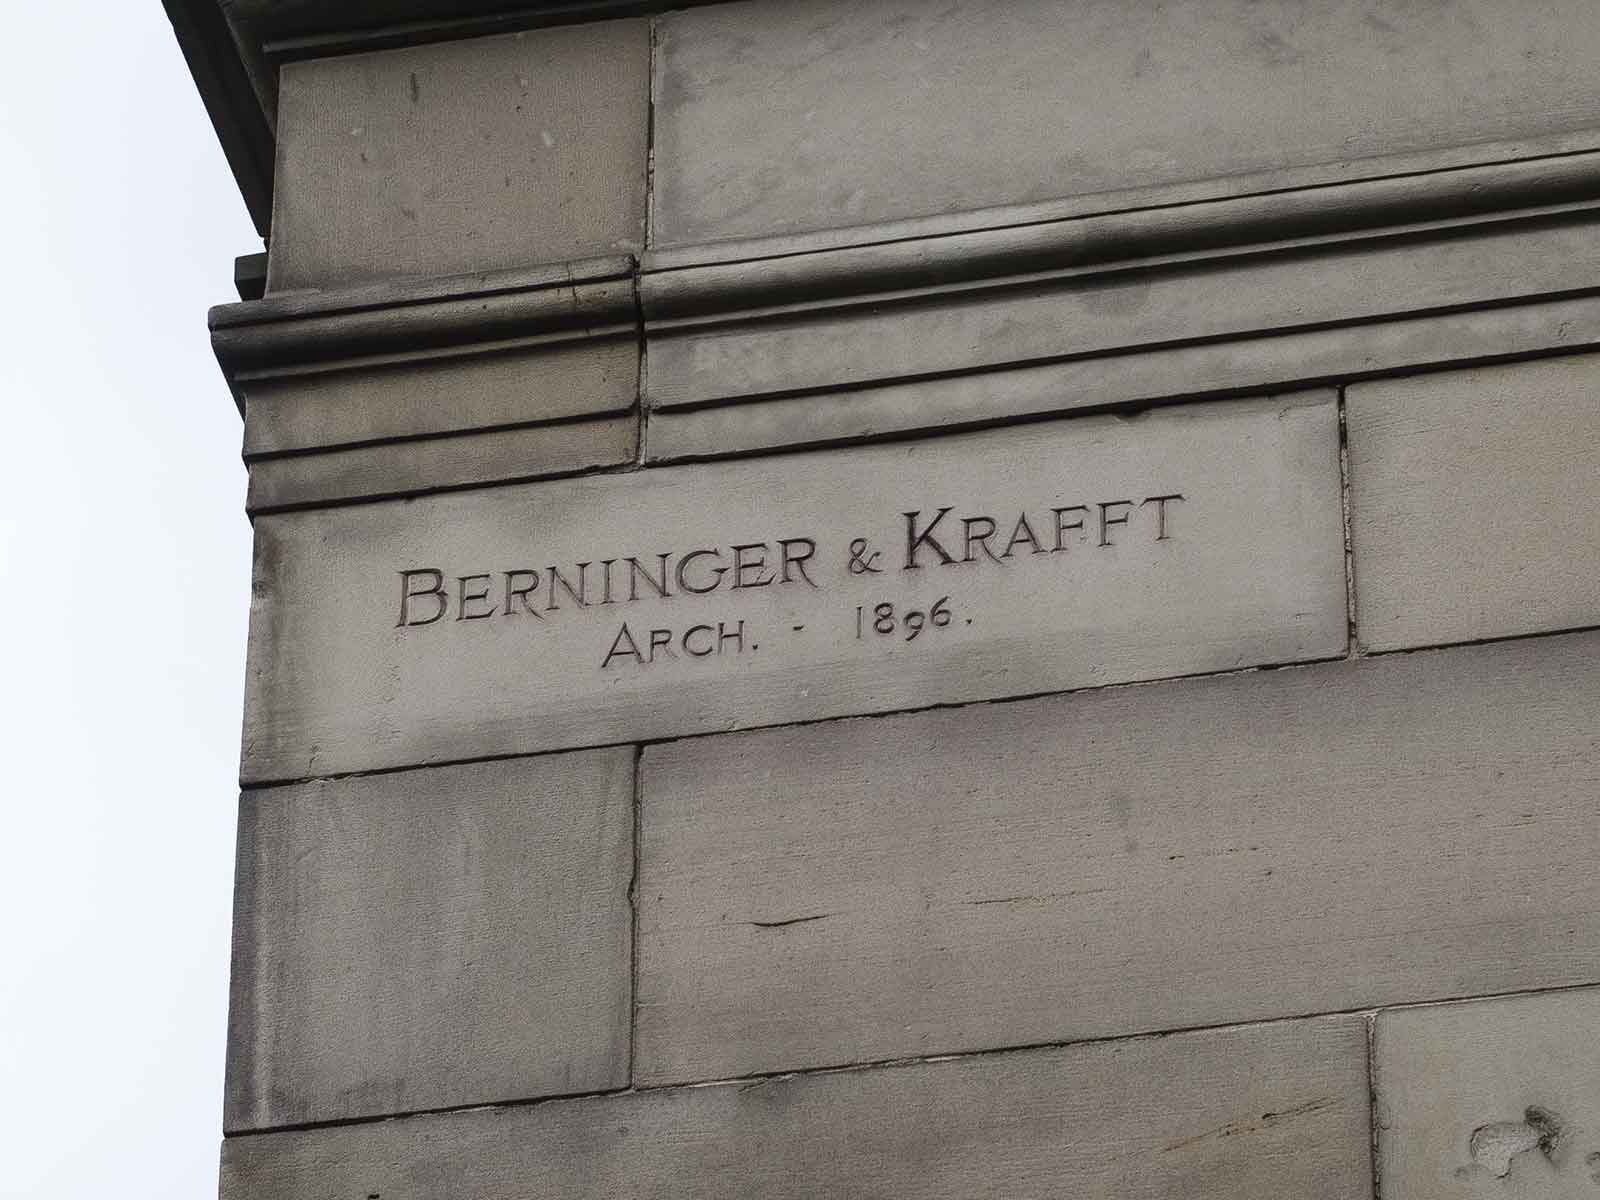 Berninger-&-krafft-arch-1896_2